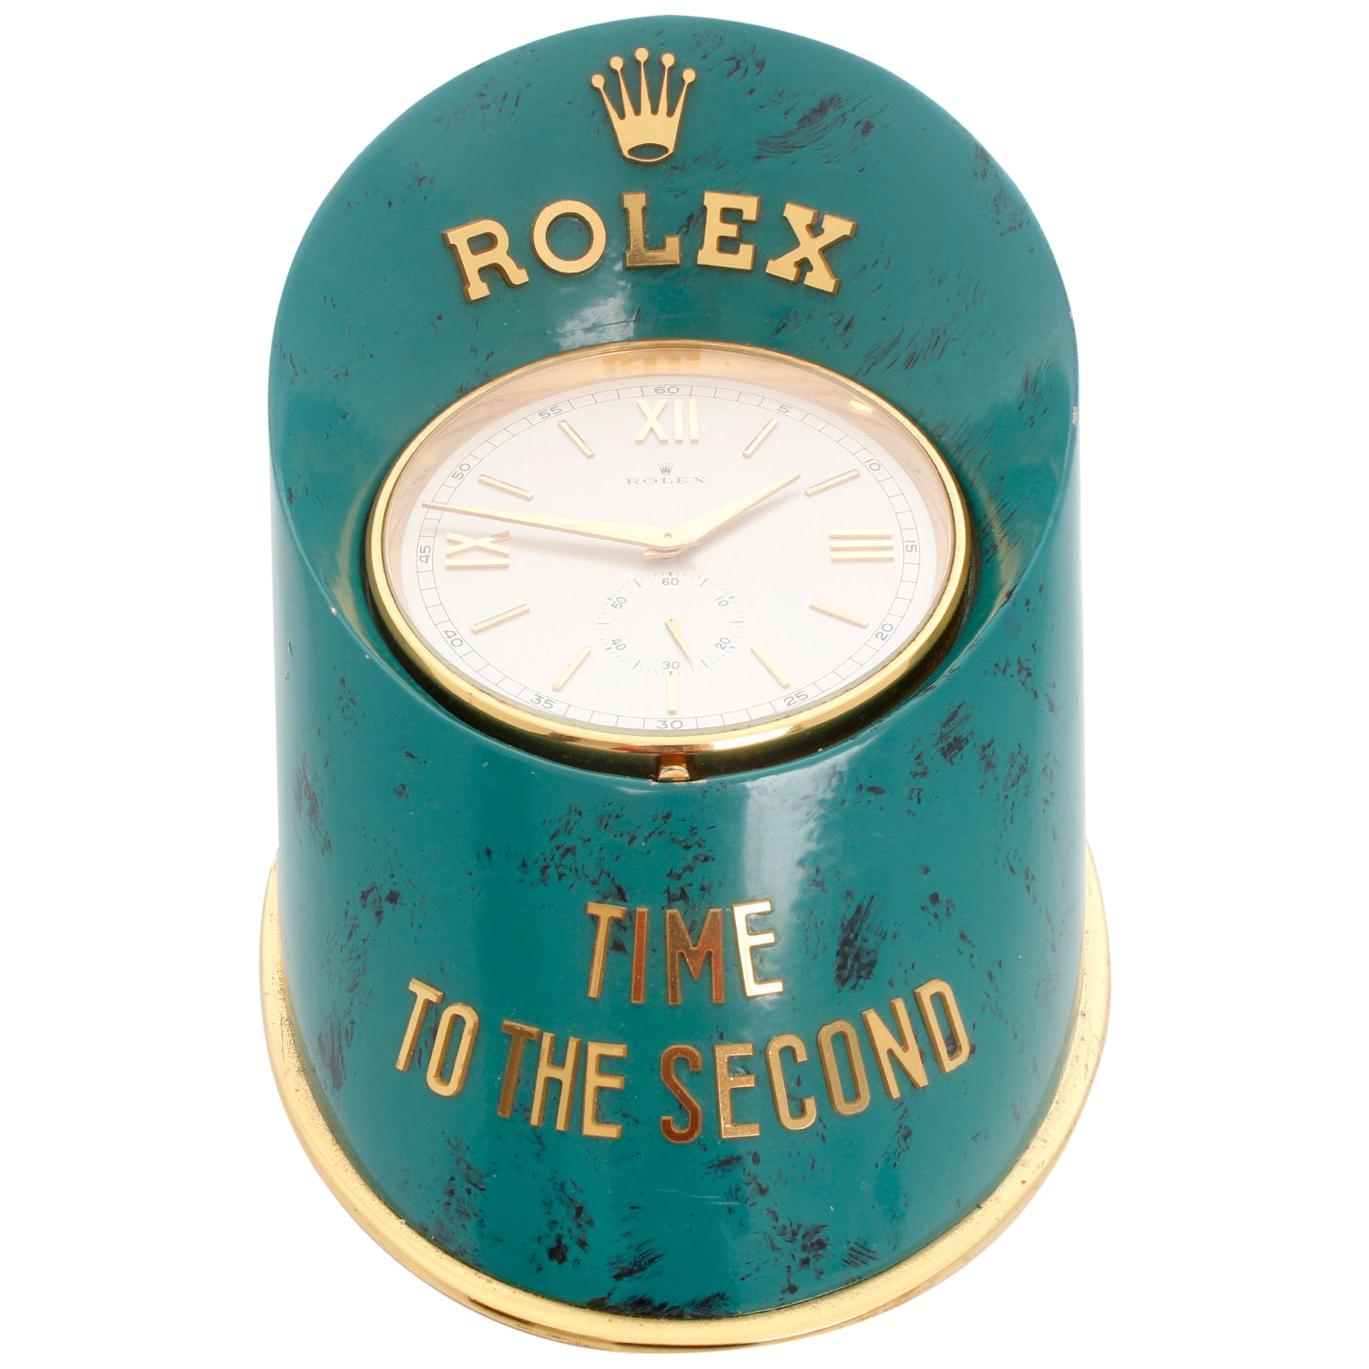 Rolex Sabot oder Huf Händler Display Uhr